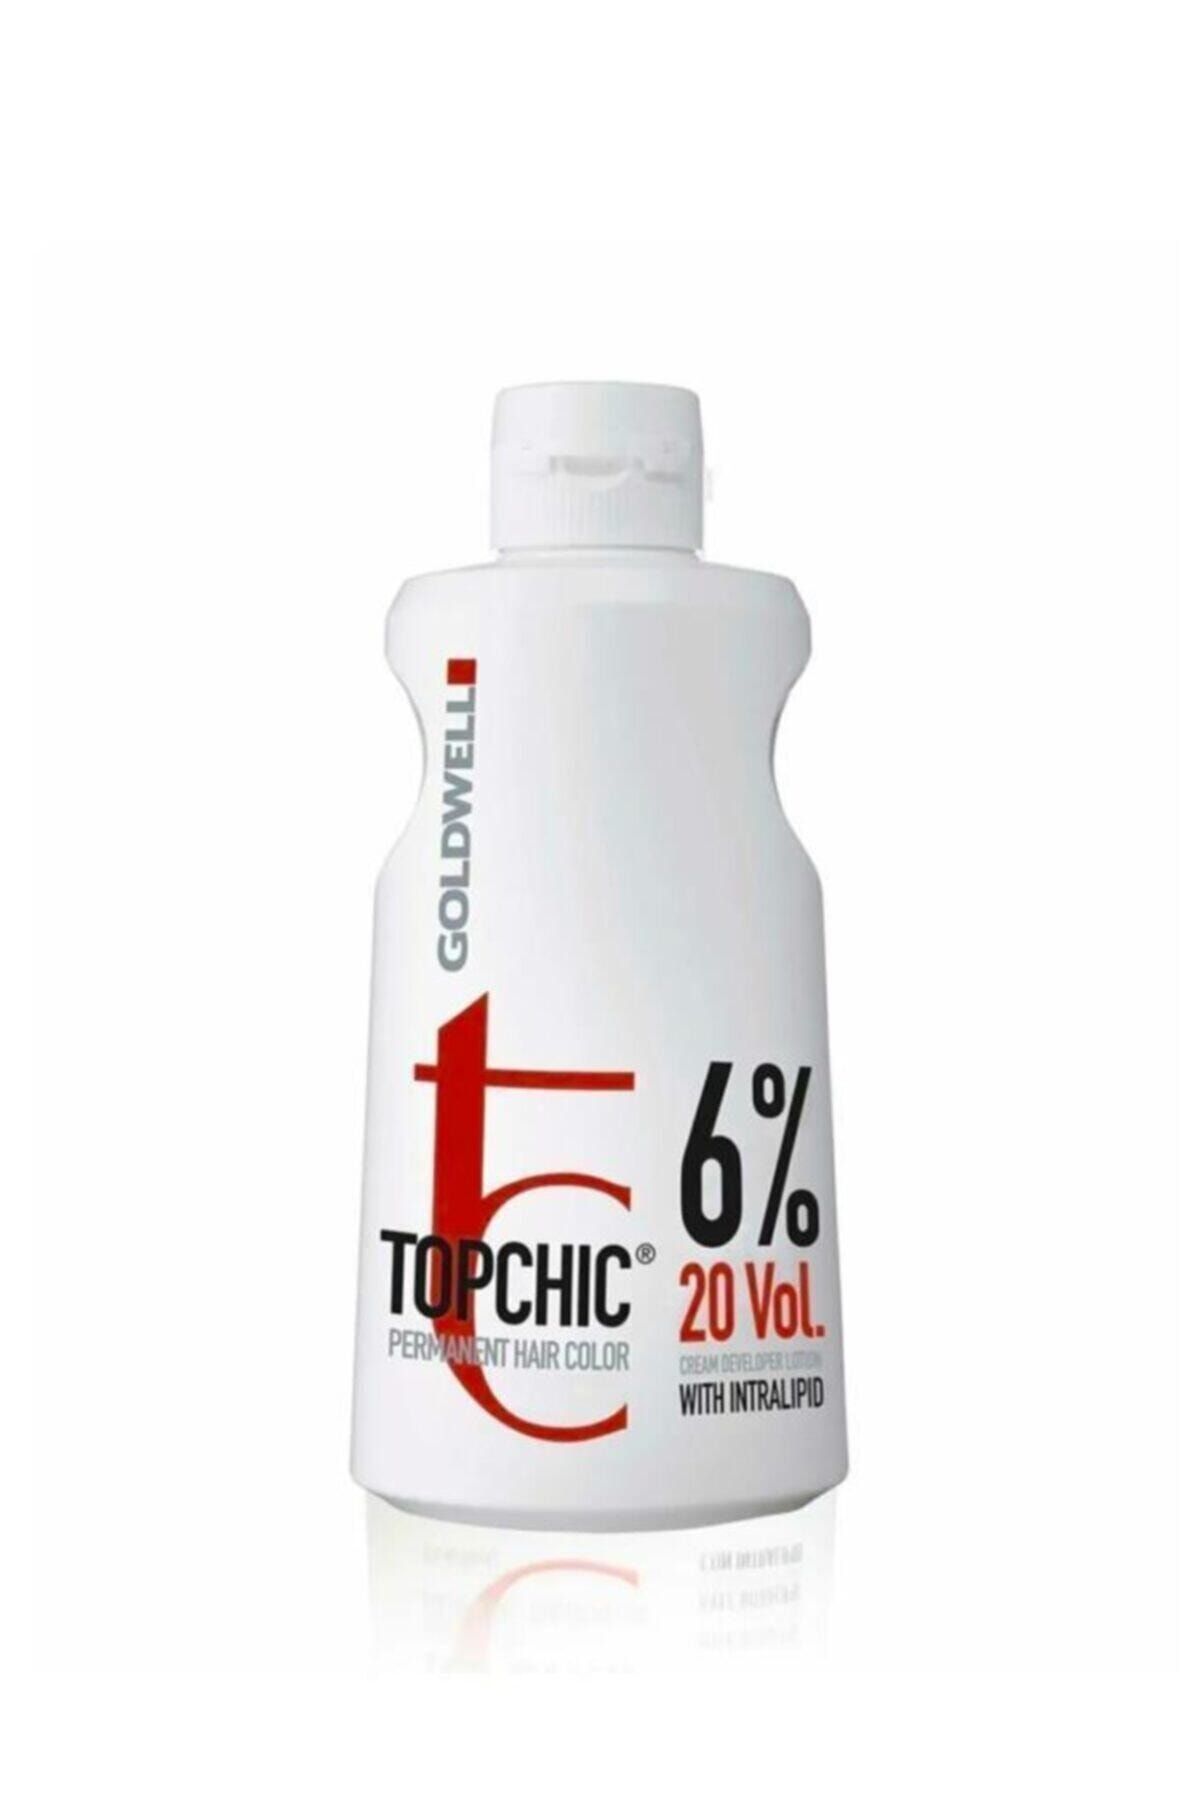 GOLDWELL Topchic Oksidan Krem %6 20 Vol 1000 ml